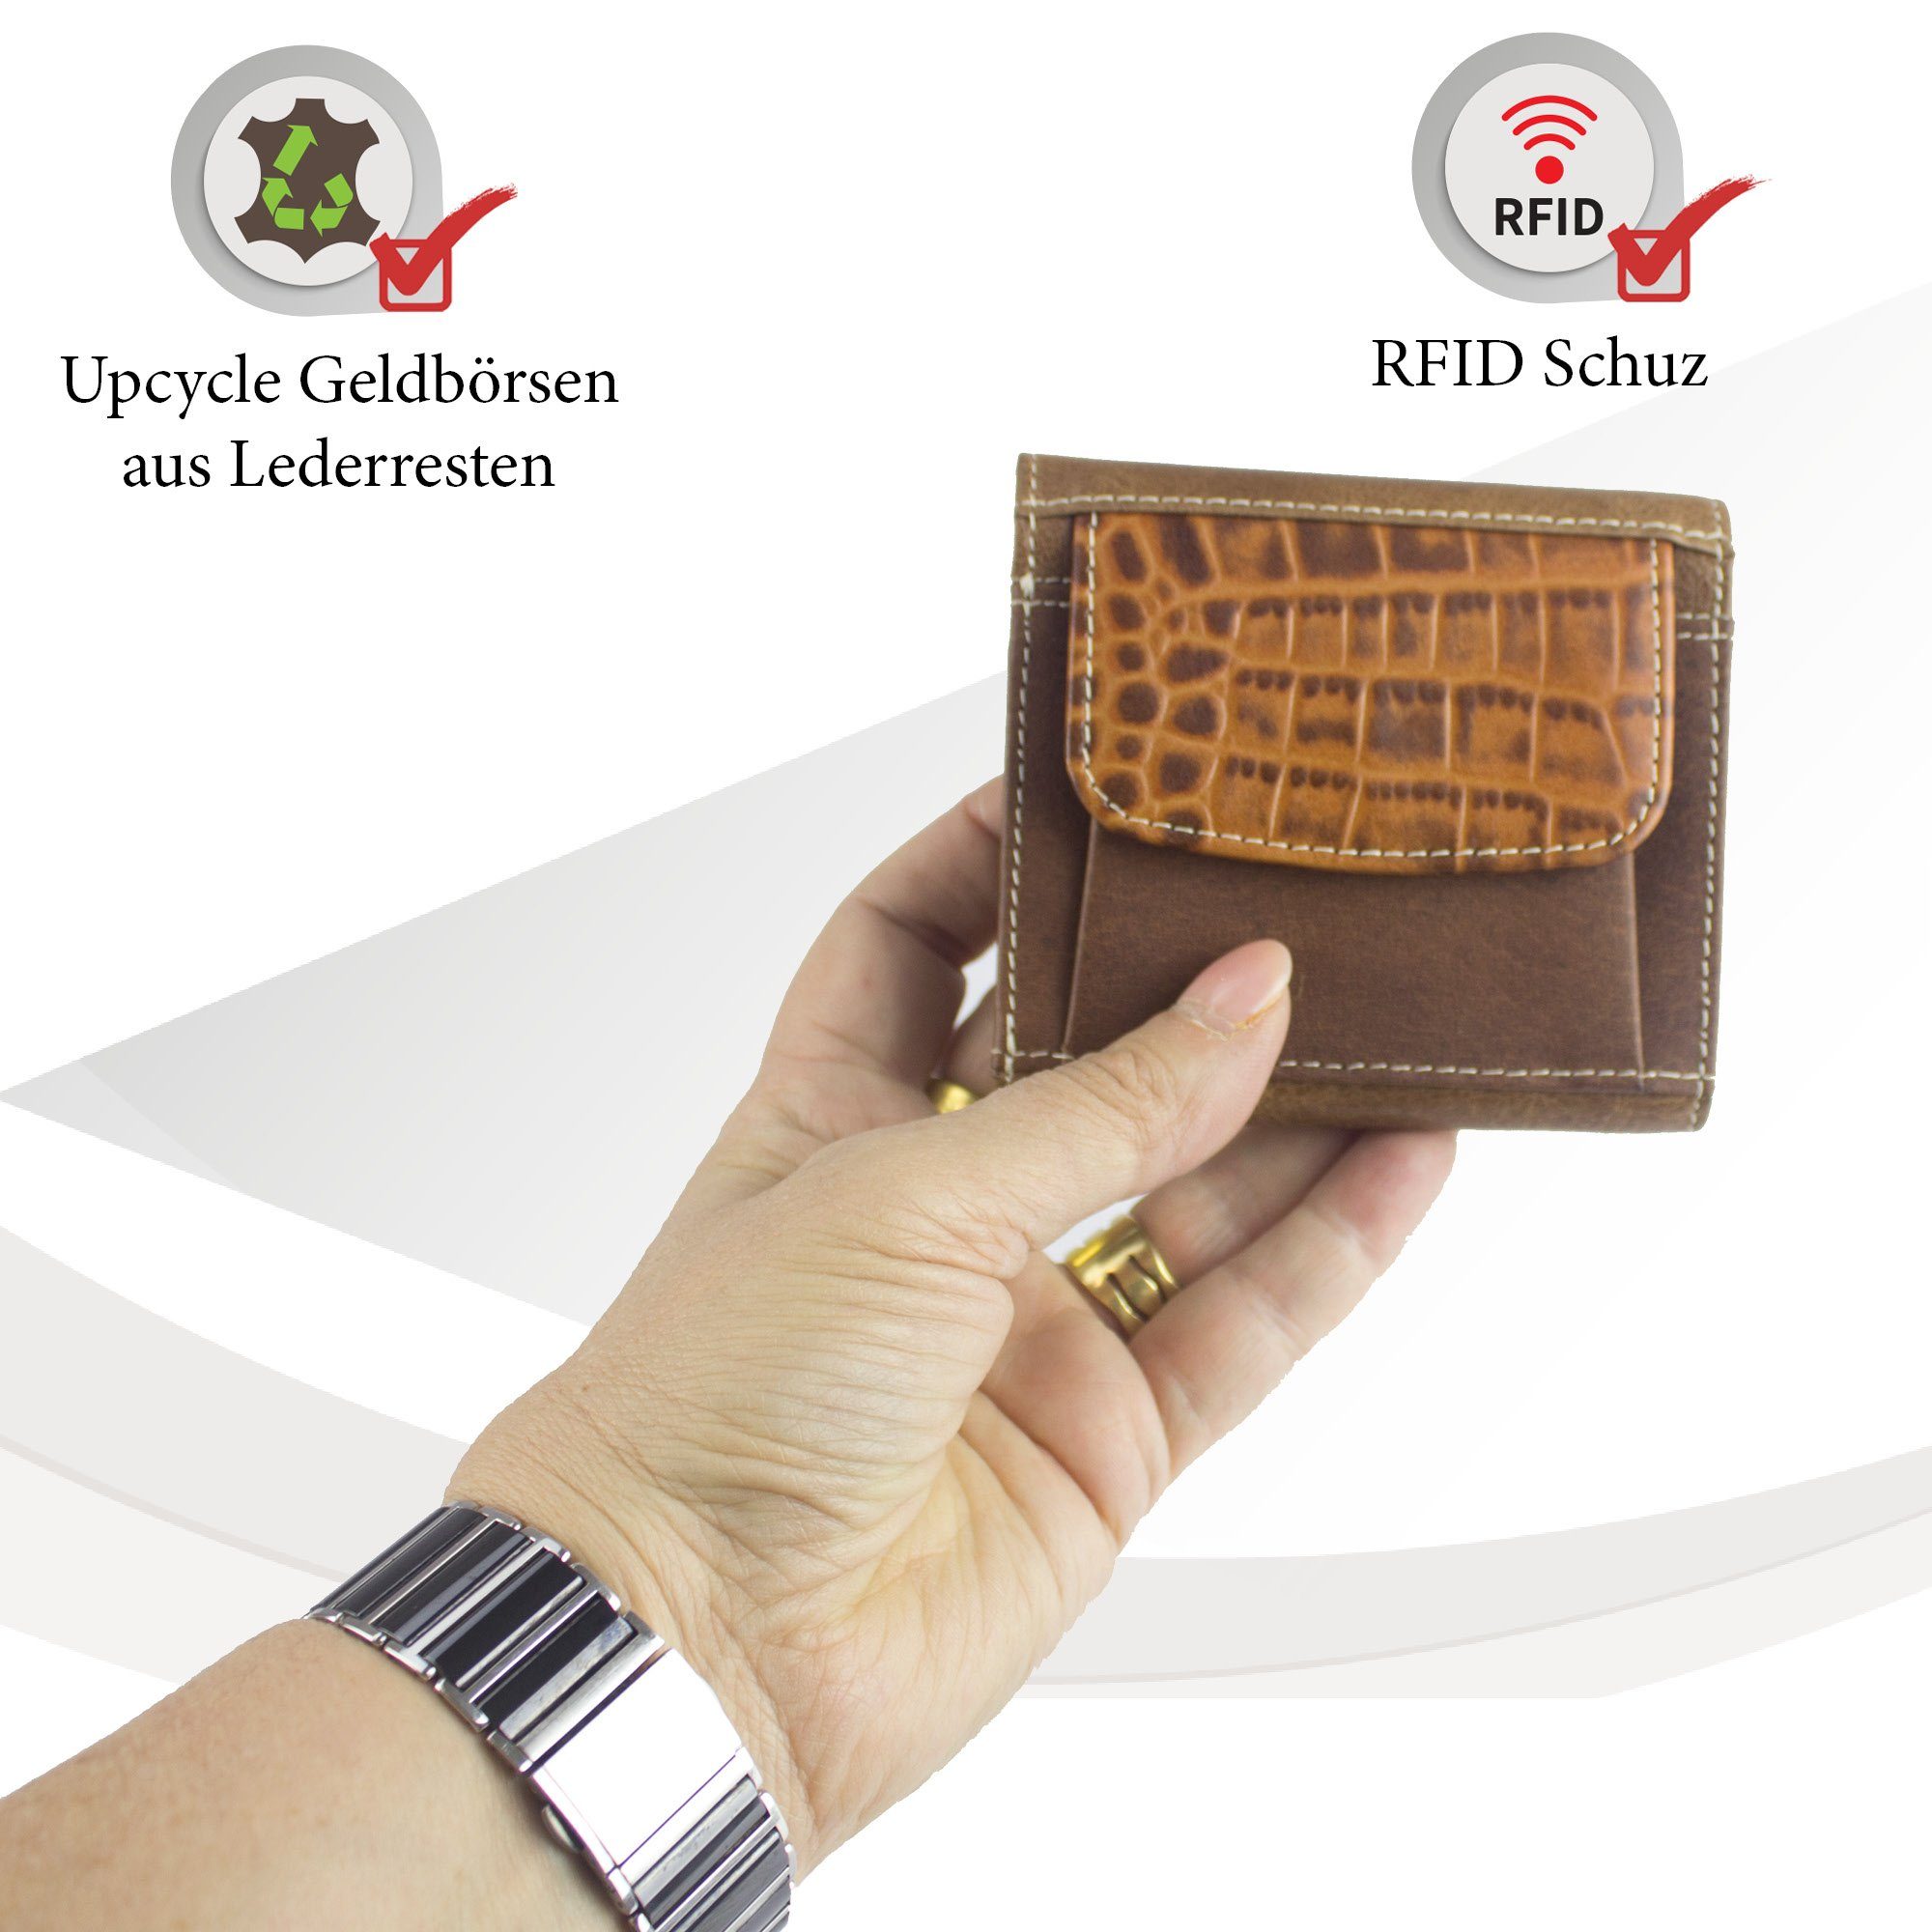 recycelten Brieftasche mit echt Sunsa aus Geldbörse Unisex Portemonnaie echt RFID-Schutz, Leder, Geldbeutel Lederresten, Leder klein Damen, braun